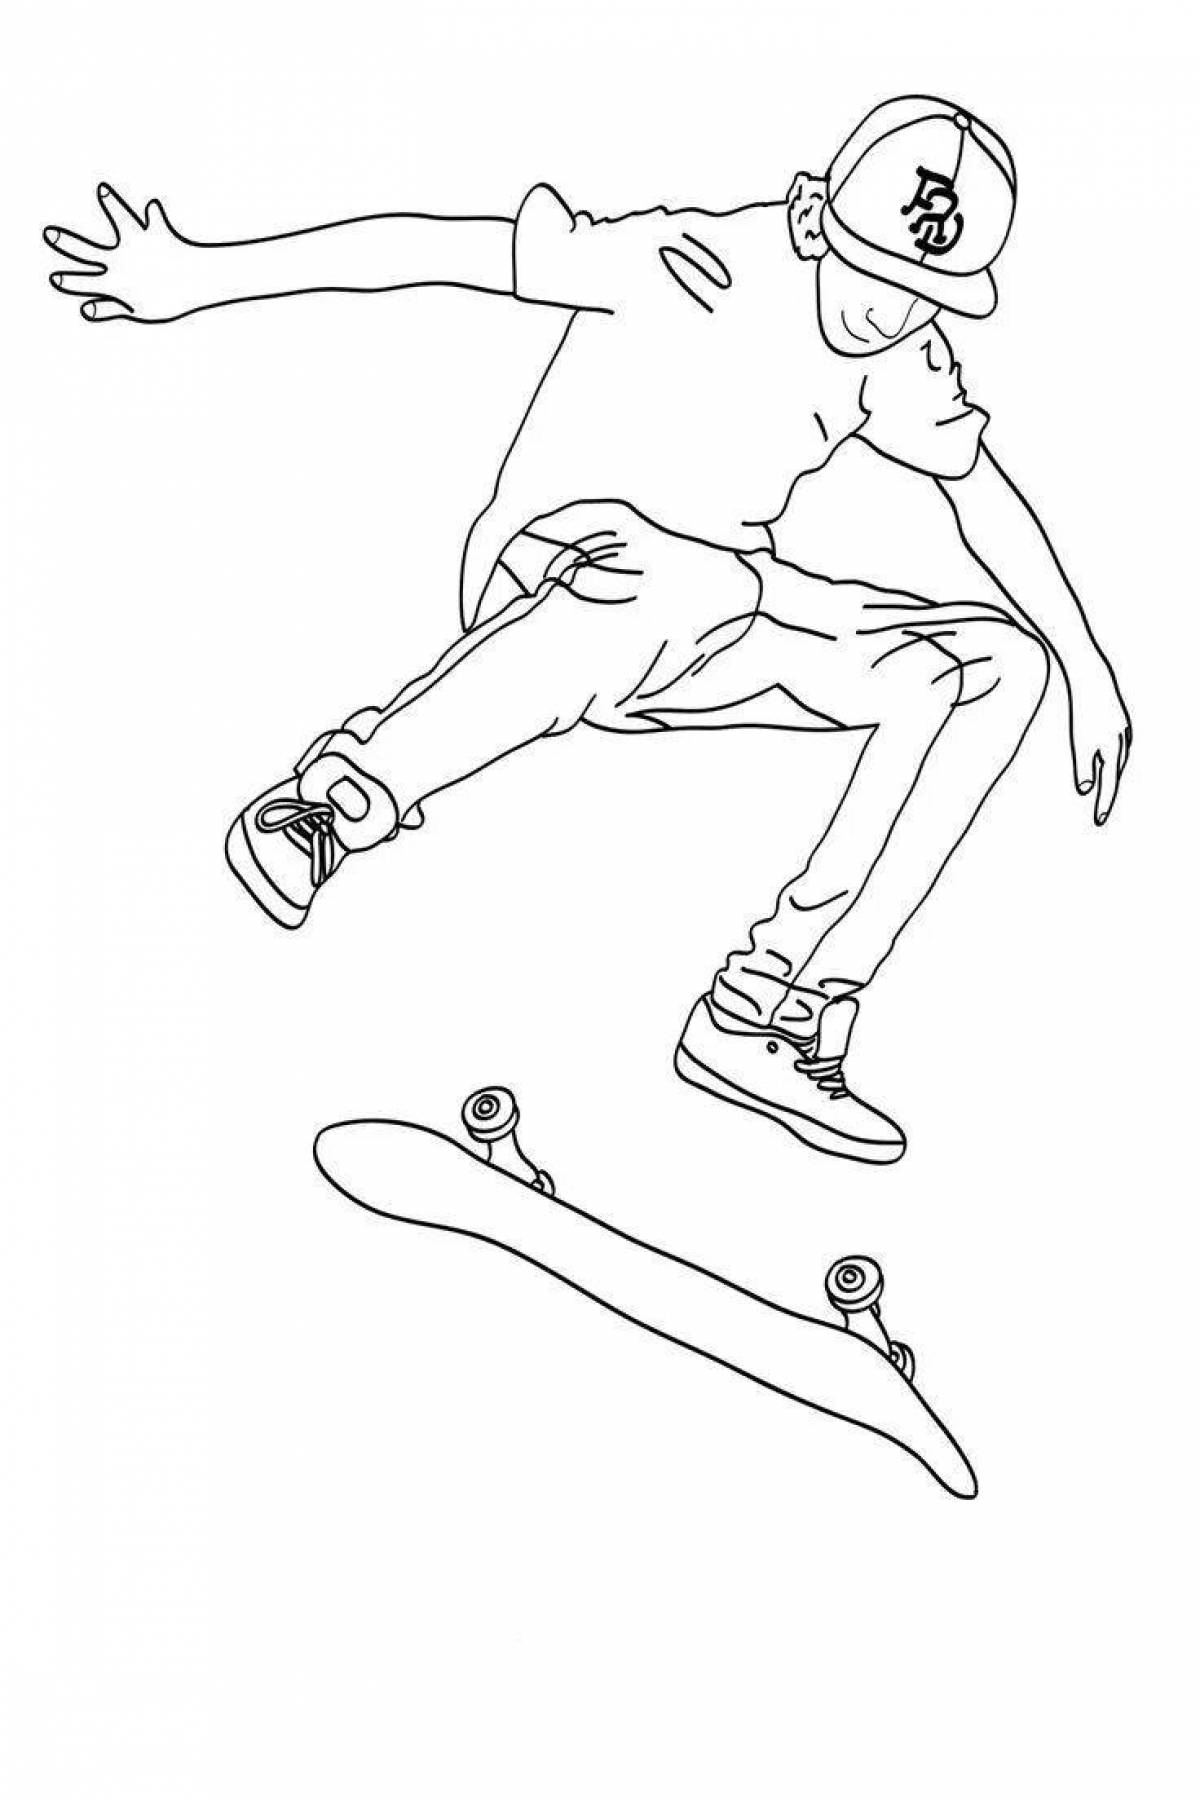 A tenacious girl on a skateboard